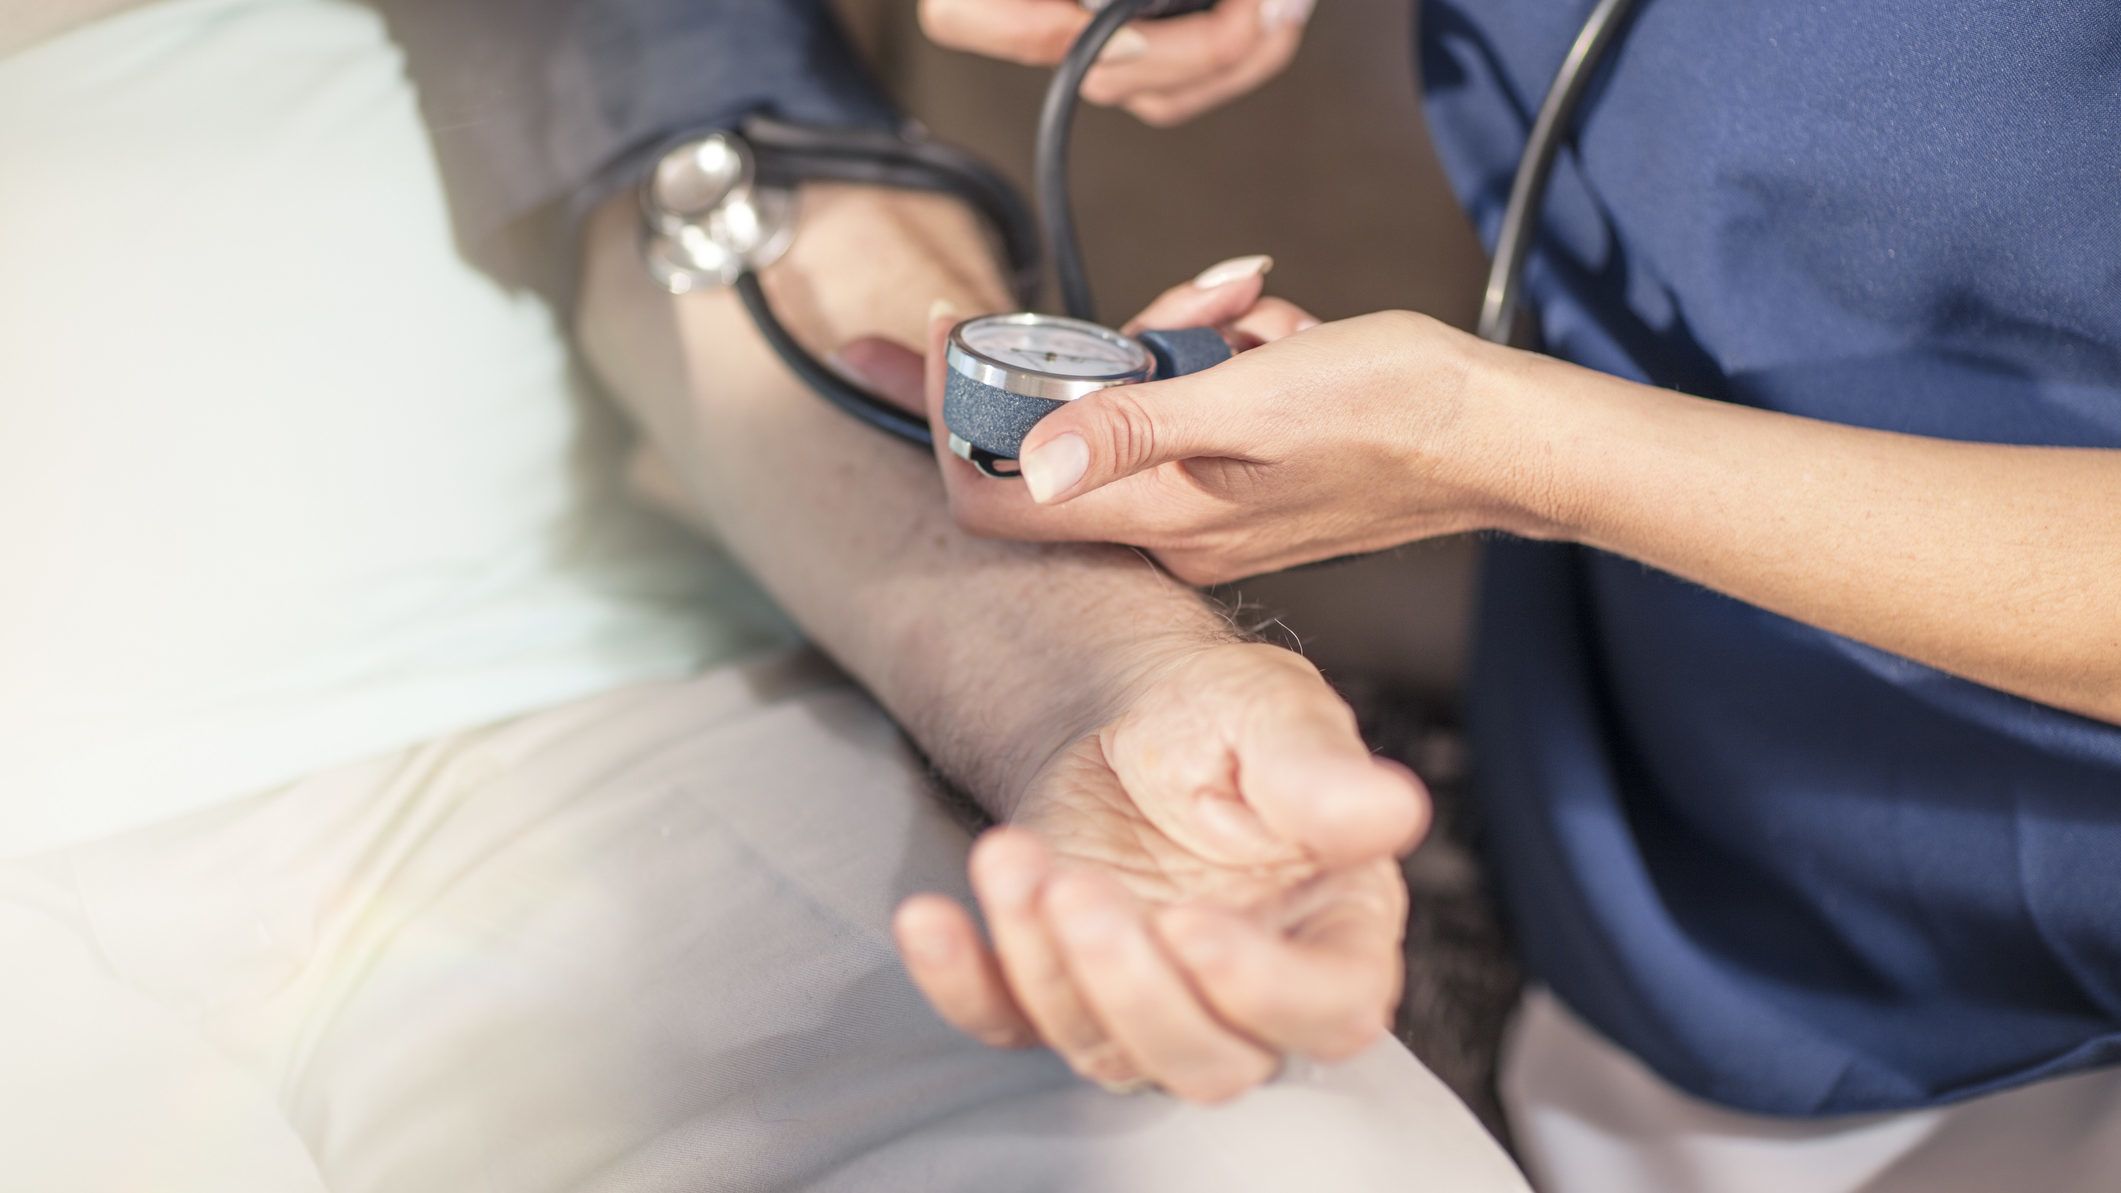 magas vérnyomás kezelése 3 fokos vélemények magas vérnyomás szövődményei idős korban